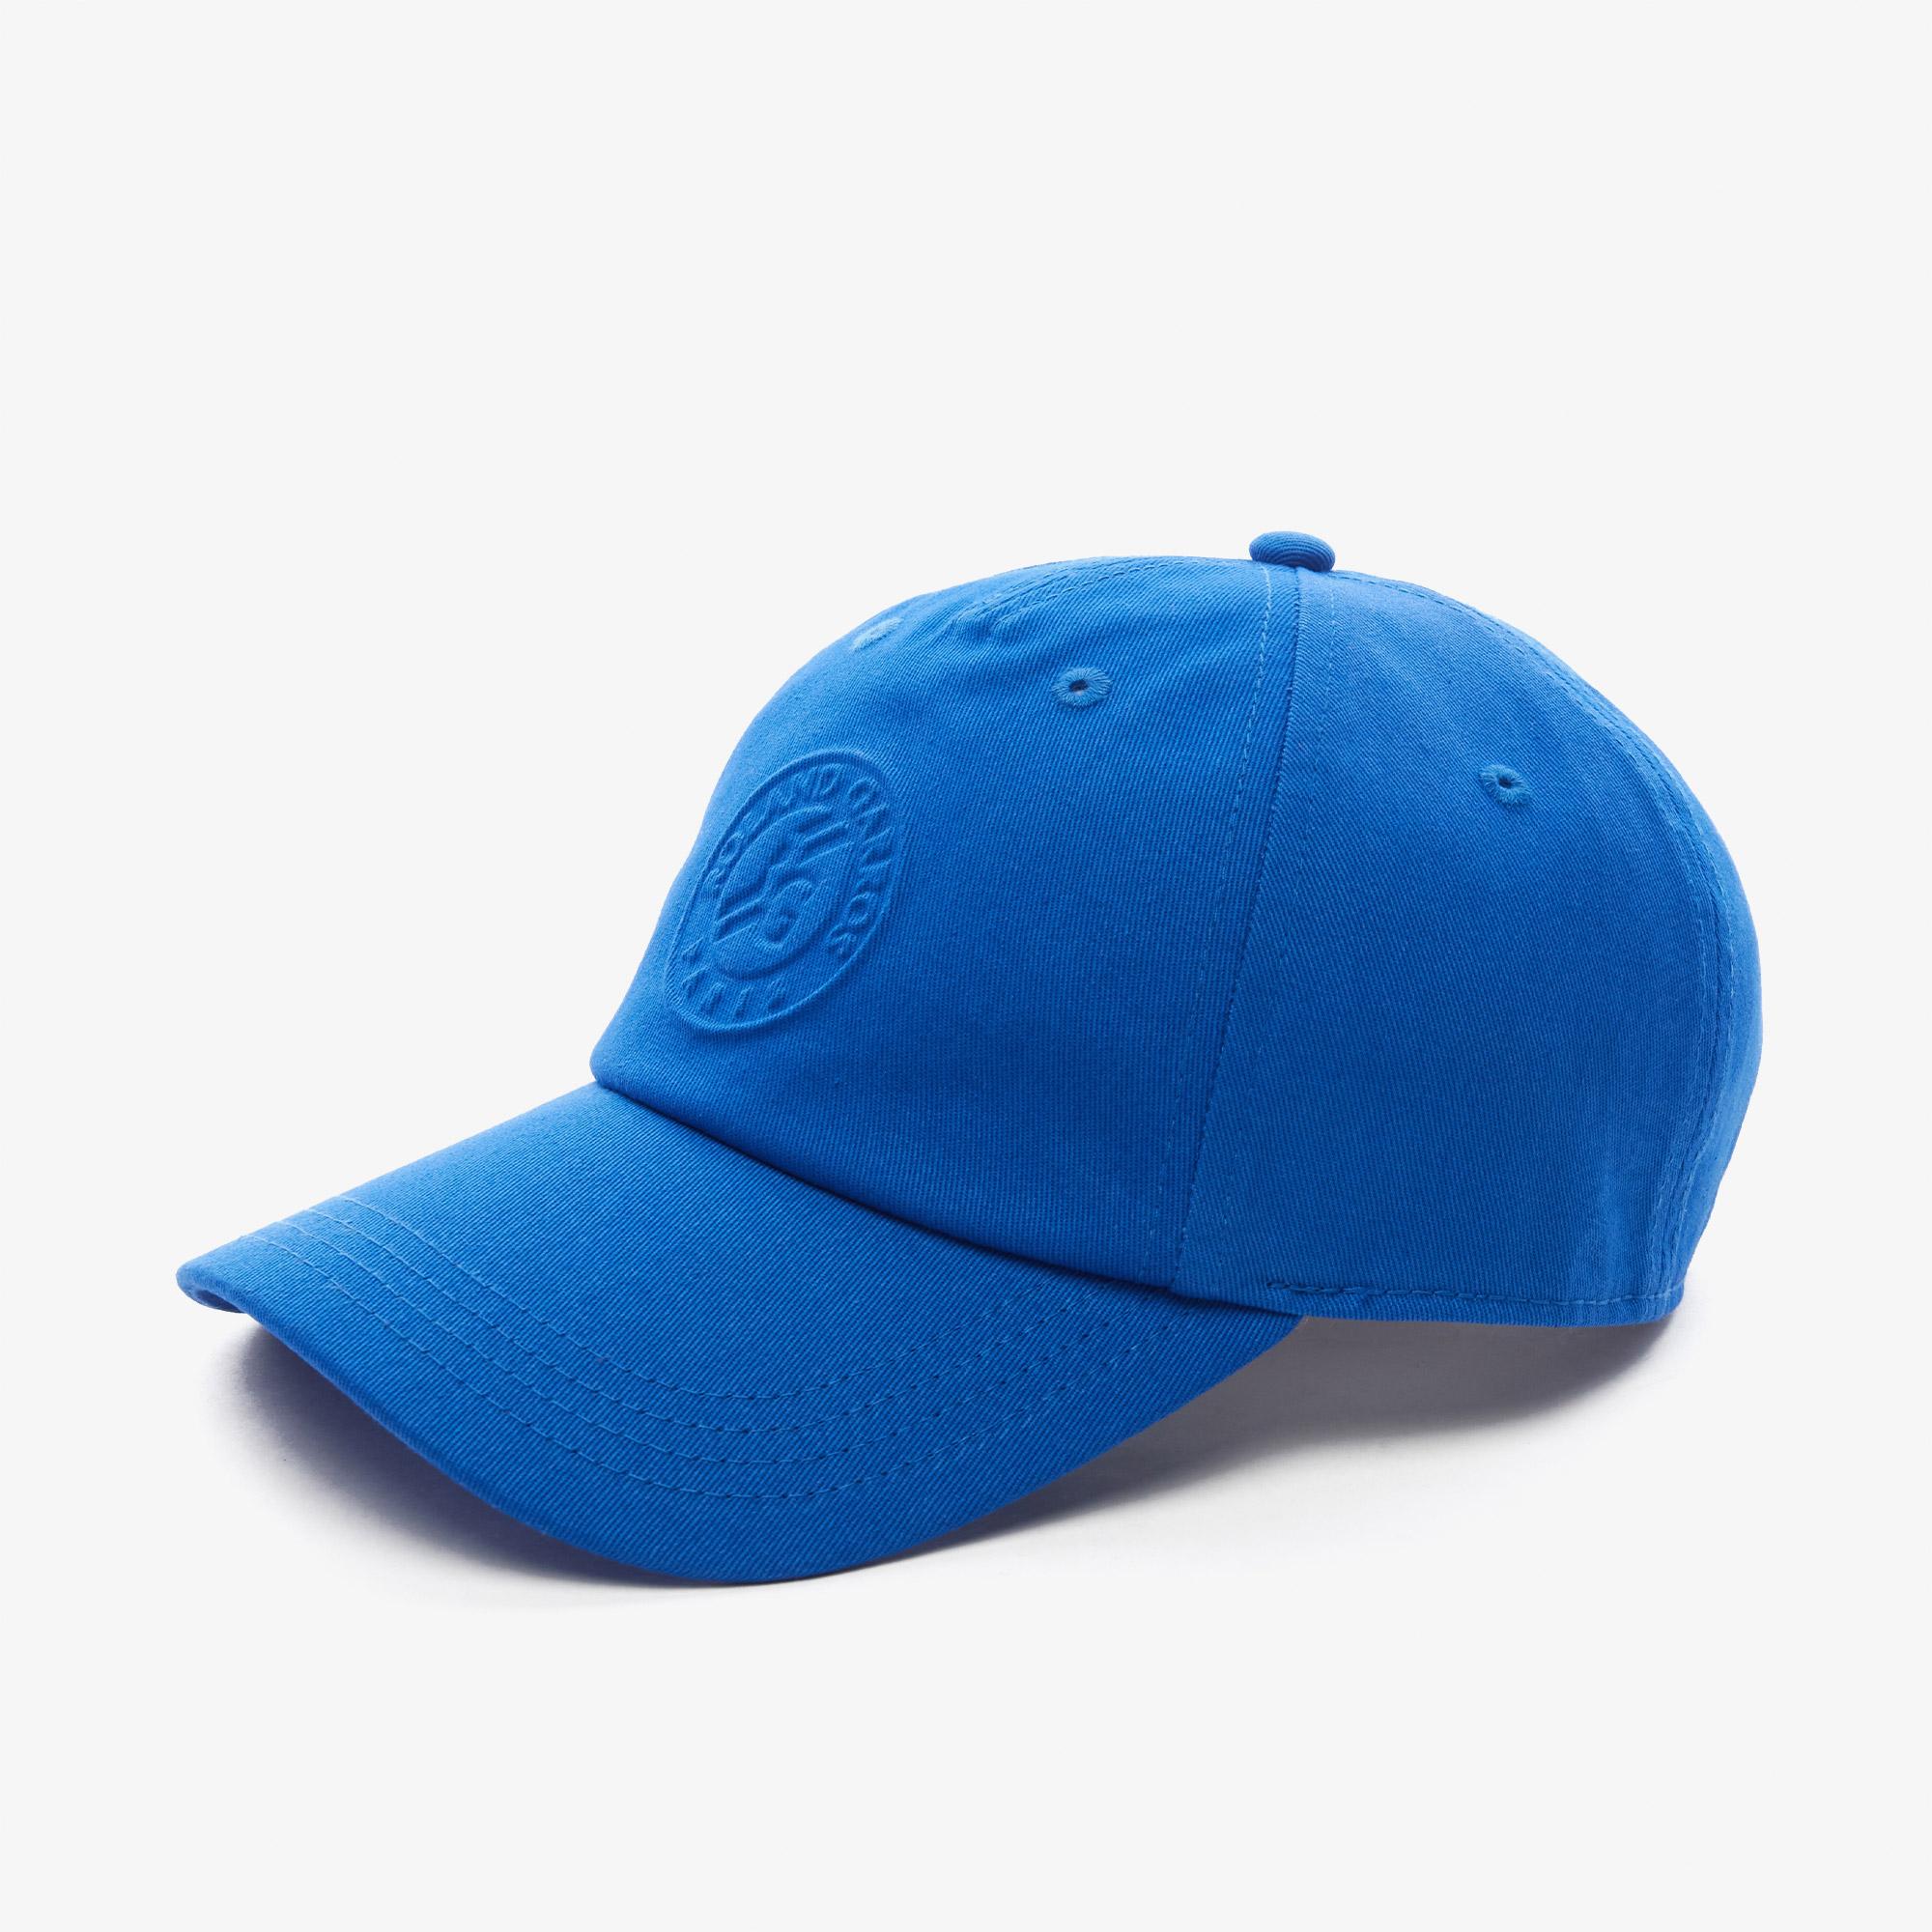 Lacoste Roland Garros Erkek Baskılı Mavi Şapka. 2